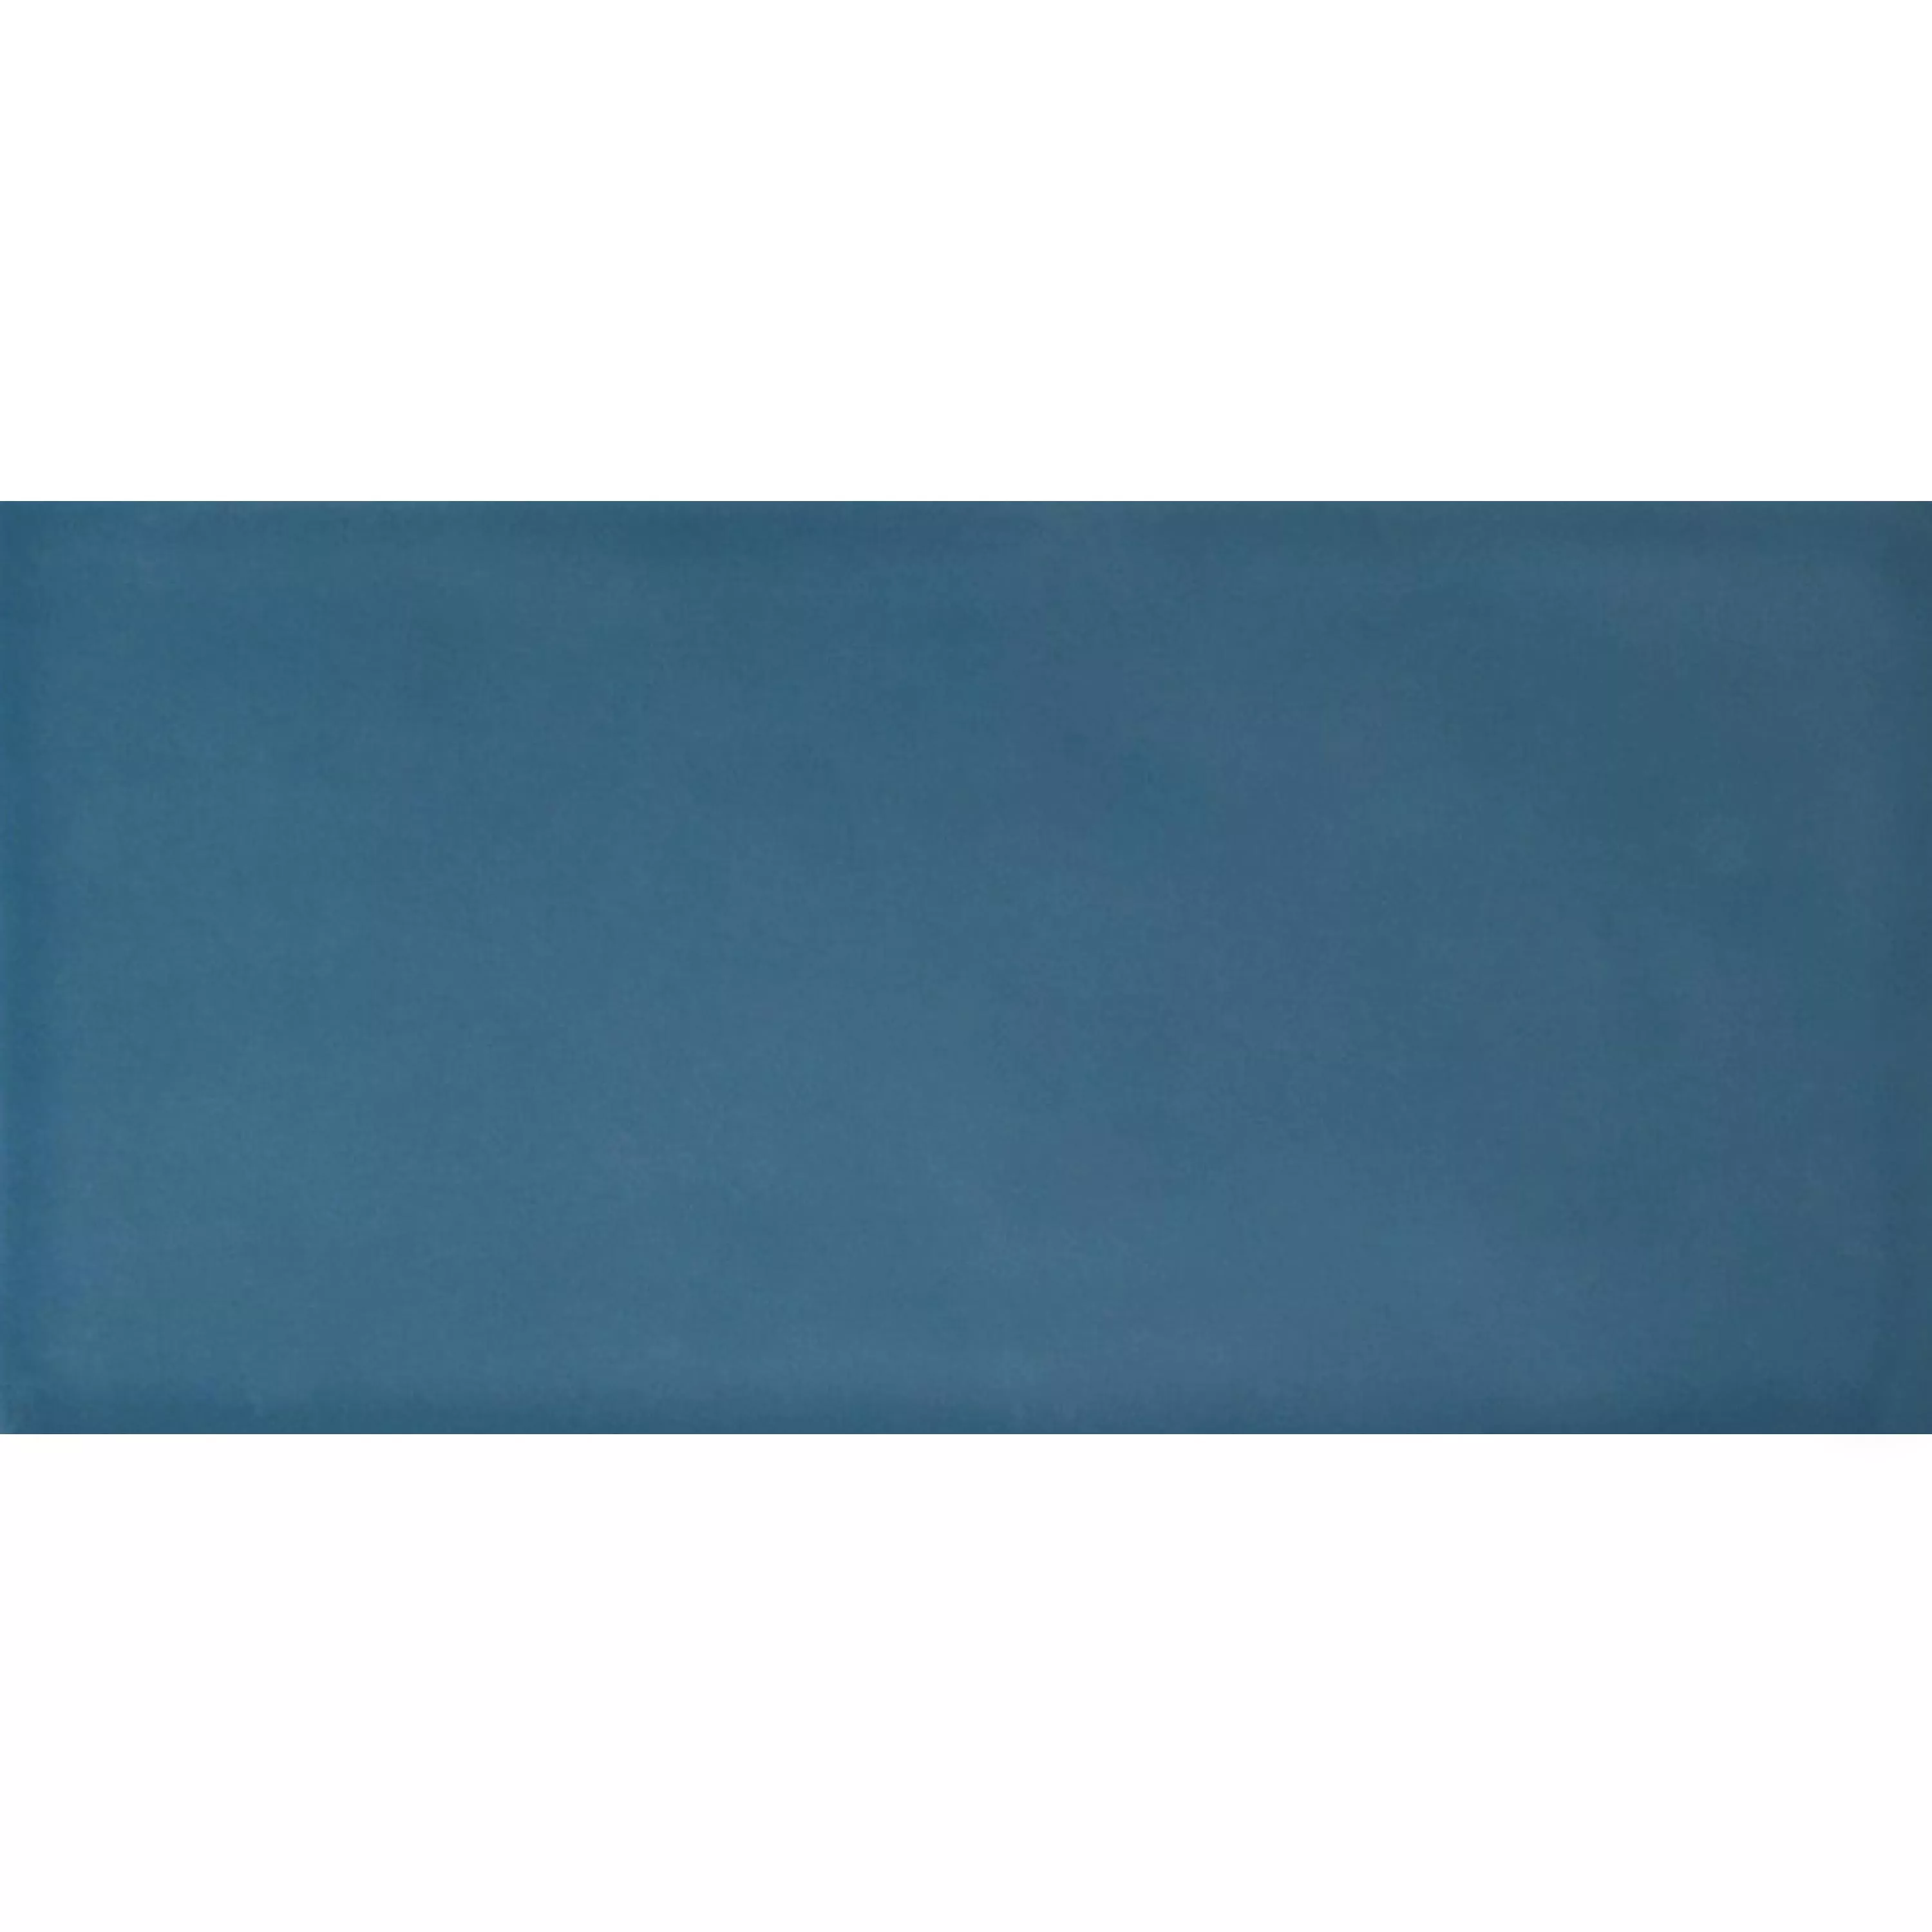 Sample Wall Tiles Mogadischu 7,5x15cm Blue Mat